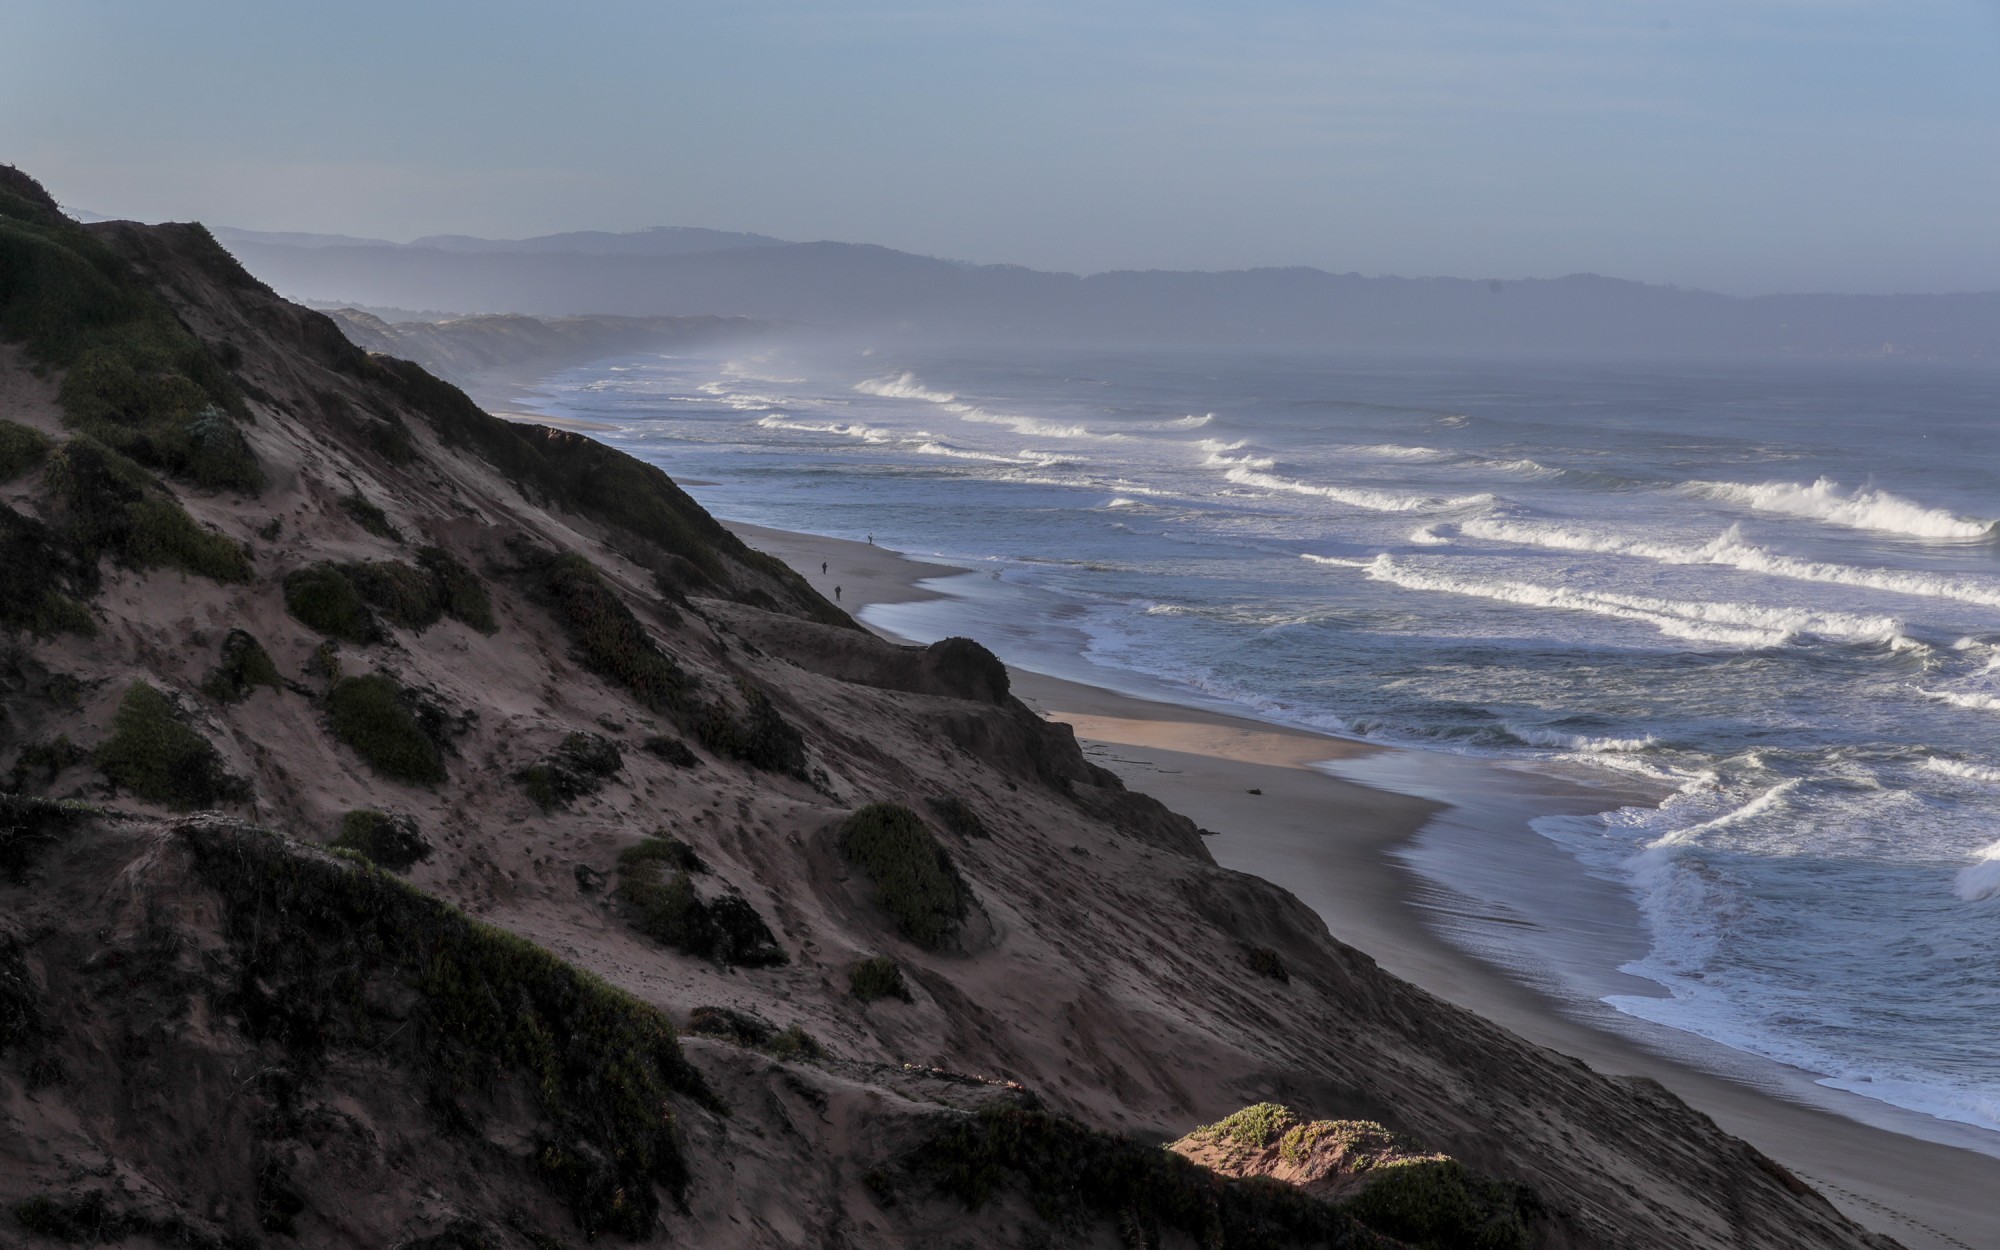 Повышение уровня моря и прибрежная эрозия угрожают пляжам и естественным песчаным дюнам по всему миру / © Los Angeles Times